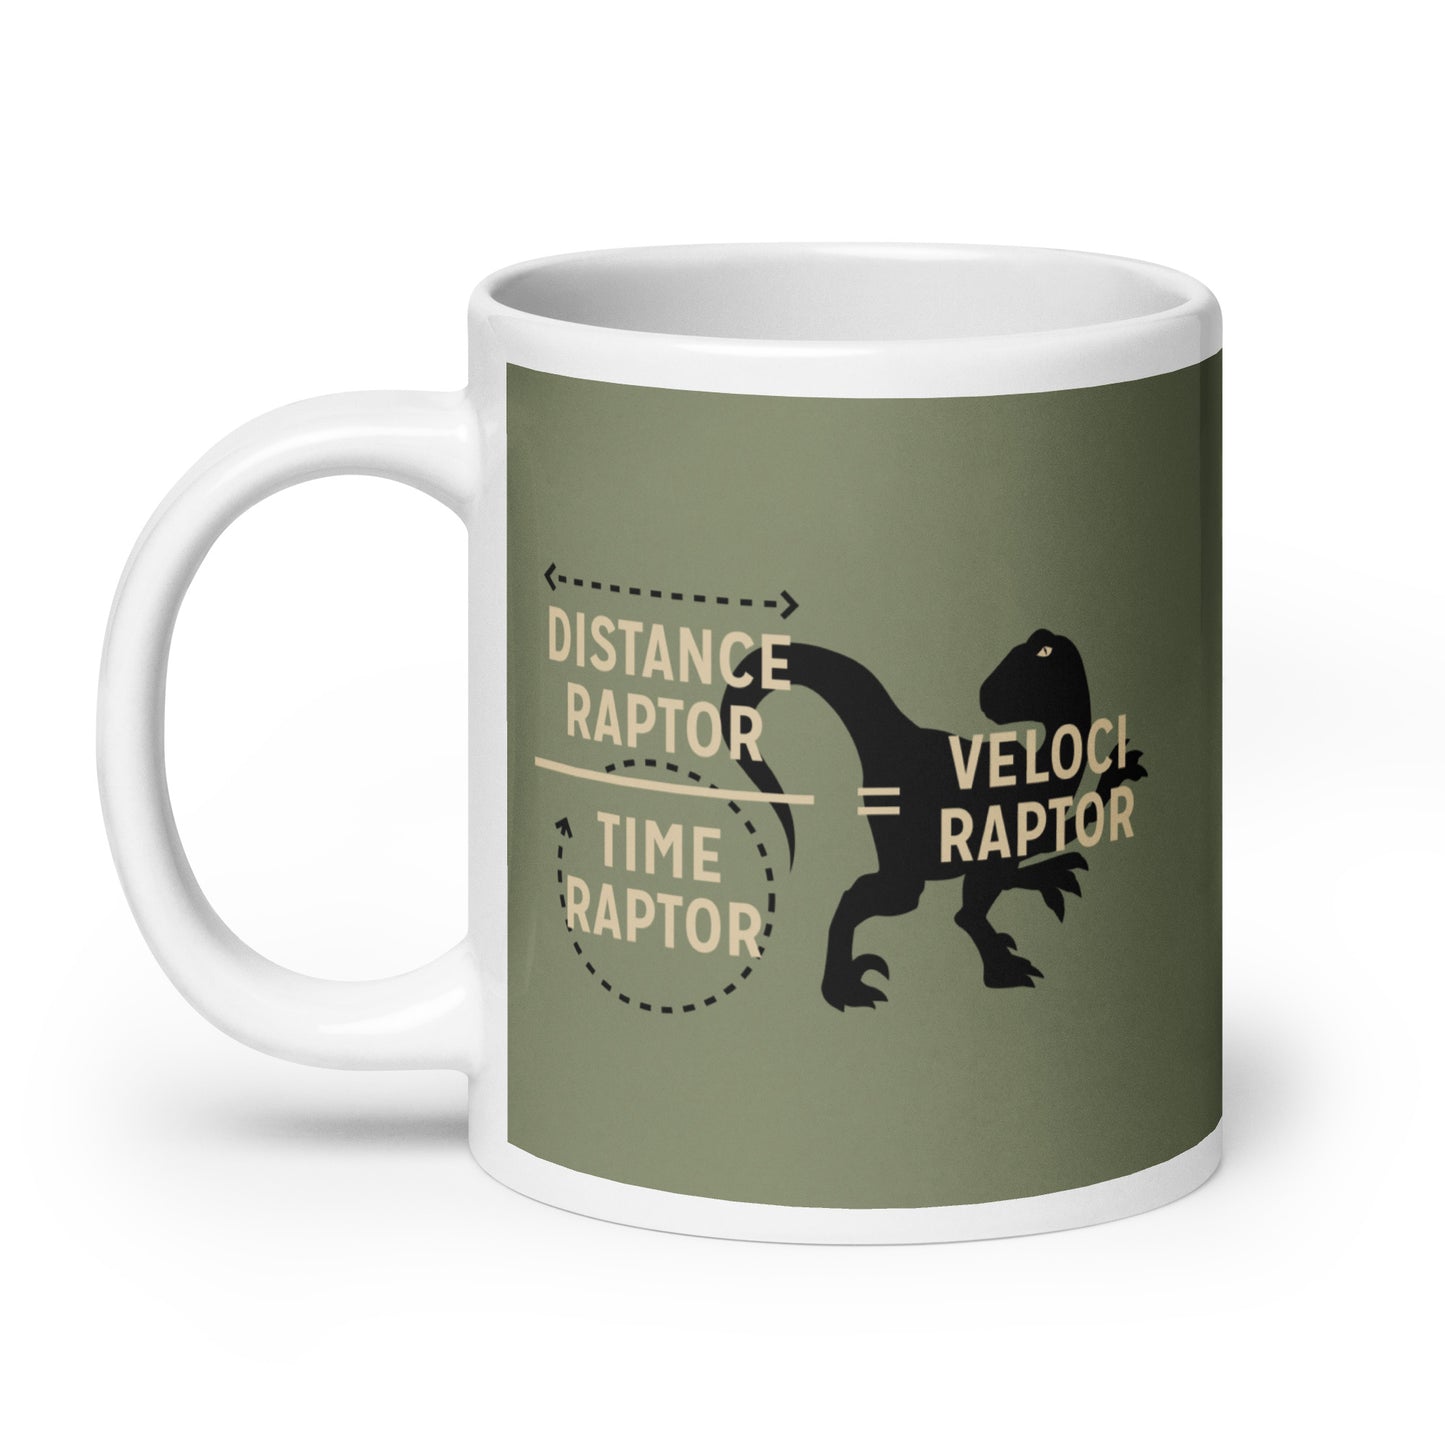 Veloci Raptor Mug